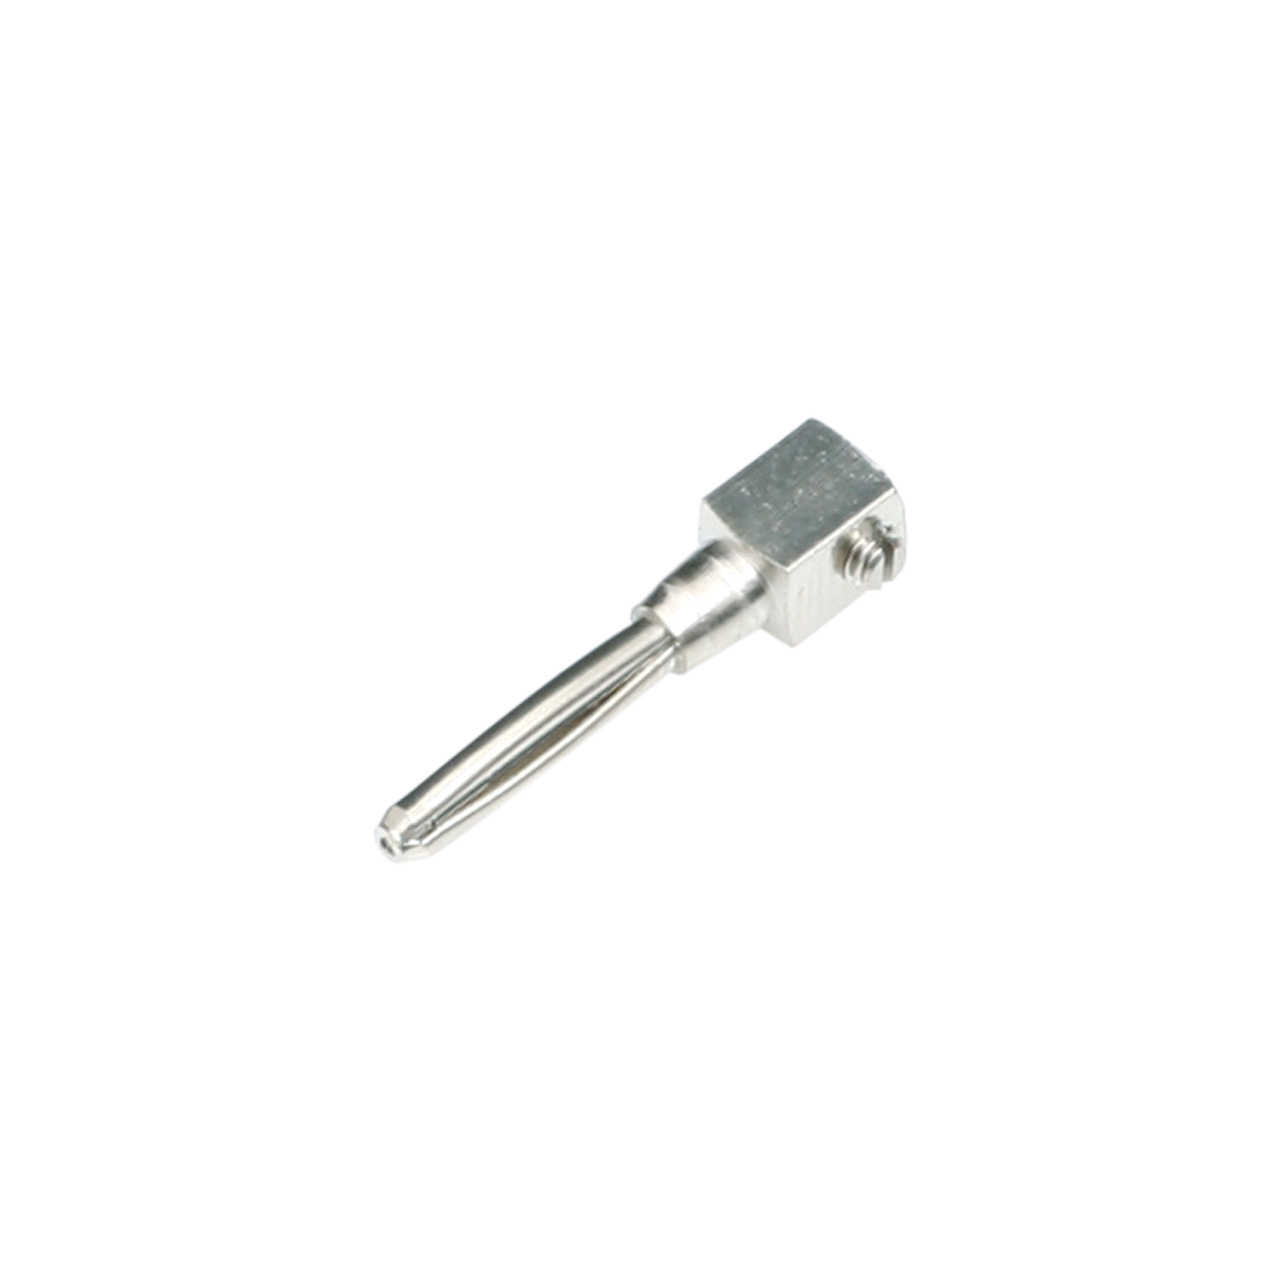 plug pin 3mm, for cable plug 2-pole